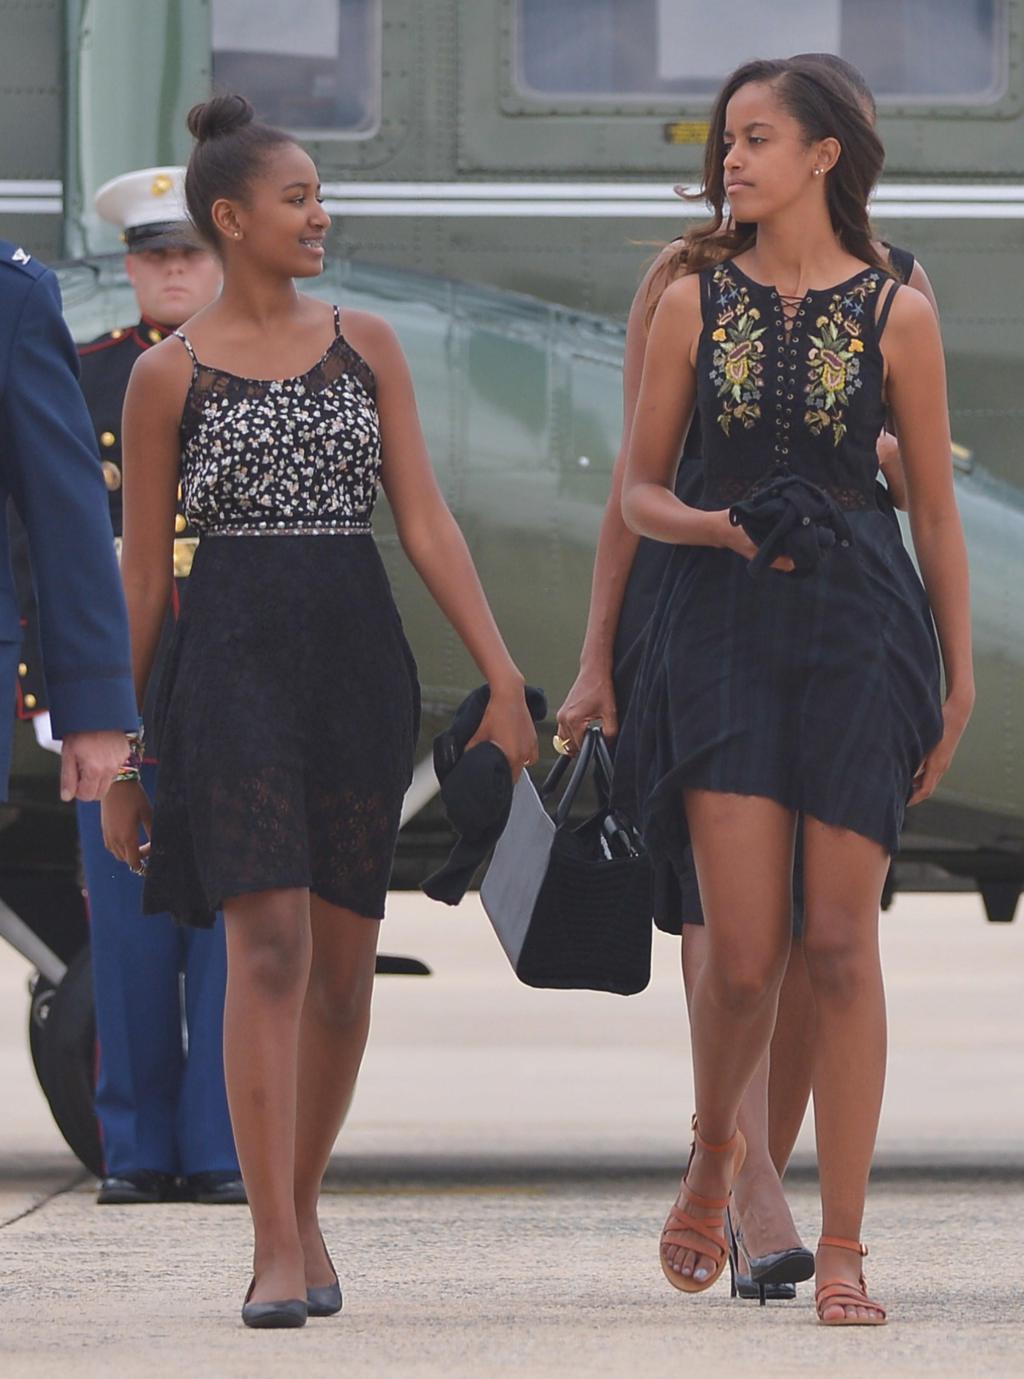  Sasha (Izq.) y Malia (Der.), hijas del presidente de los Estados Unidos Barack Obama y la Primera Dama Michelle Obama, se dirigen a abordar el Air Force One antes de partir de la Base Andrews de la Fuerza Aérea en Maryland el 30 de agosto de 2014. Obama regresa al condado de Westchester, Nueva York, para asistir a la boda de su chef personal, Sam Kass. FOTO DE AFP / Mandel NGAN (El crédito de la foto debe ser MANDEL NGAN/AFP / Getty Images)